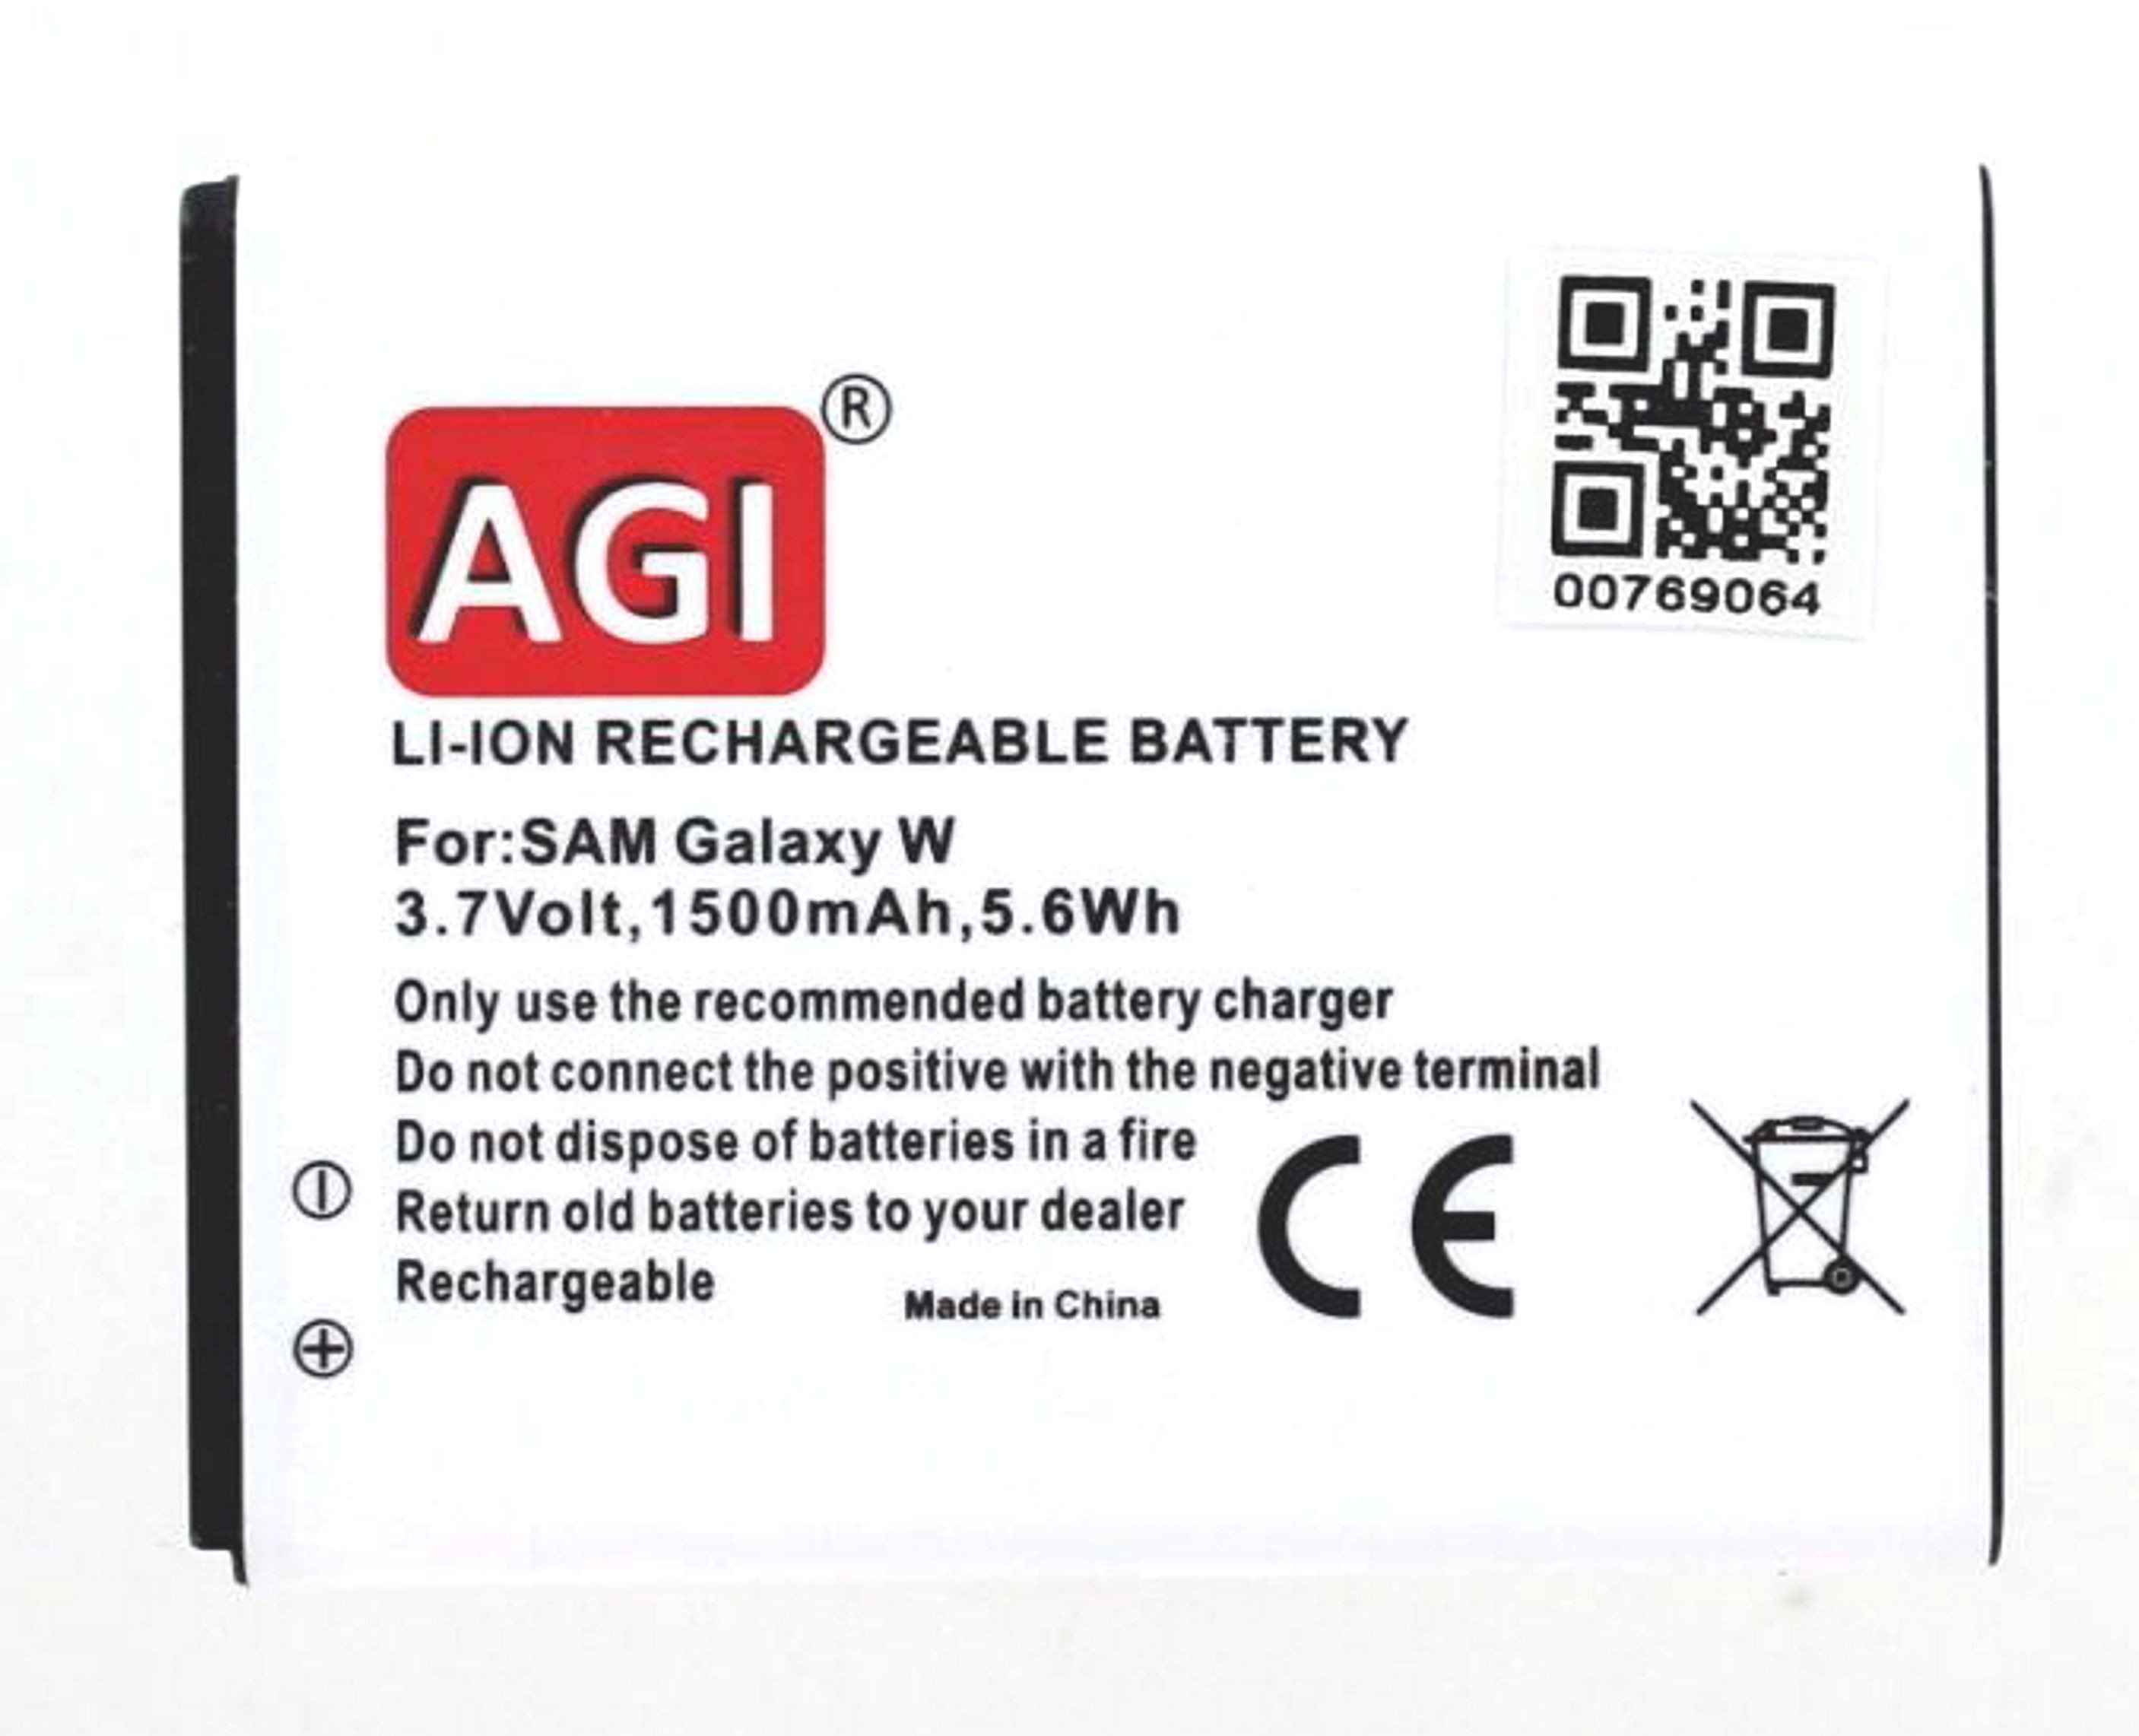 1300 mAh 3.7 GT-I8150 kompatibel Li-Ion mit Li-Ion, AGI Samsung Volt, Akku Handy-/Smartphoneakku,